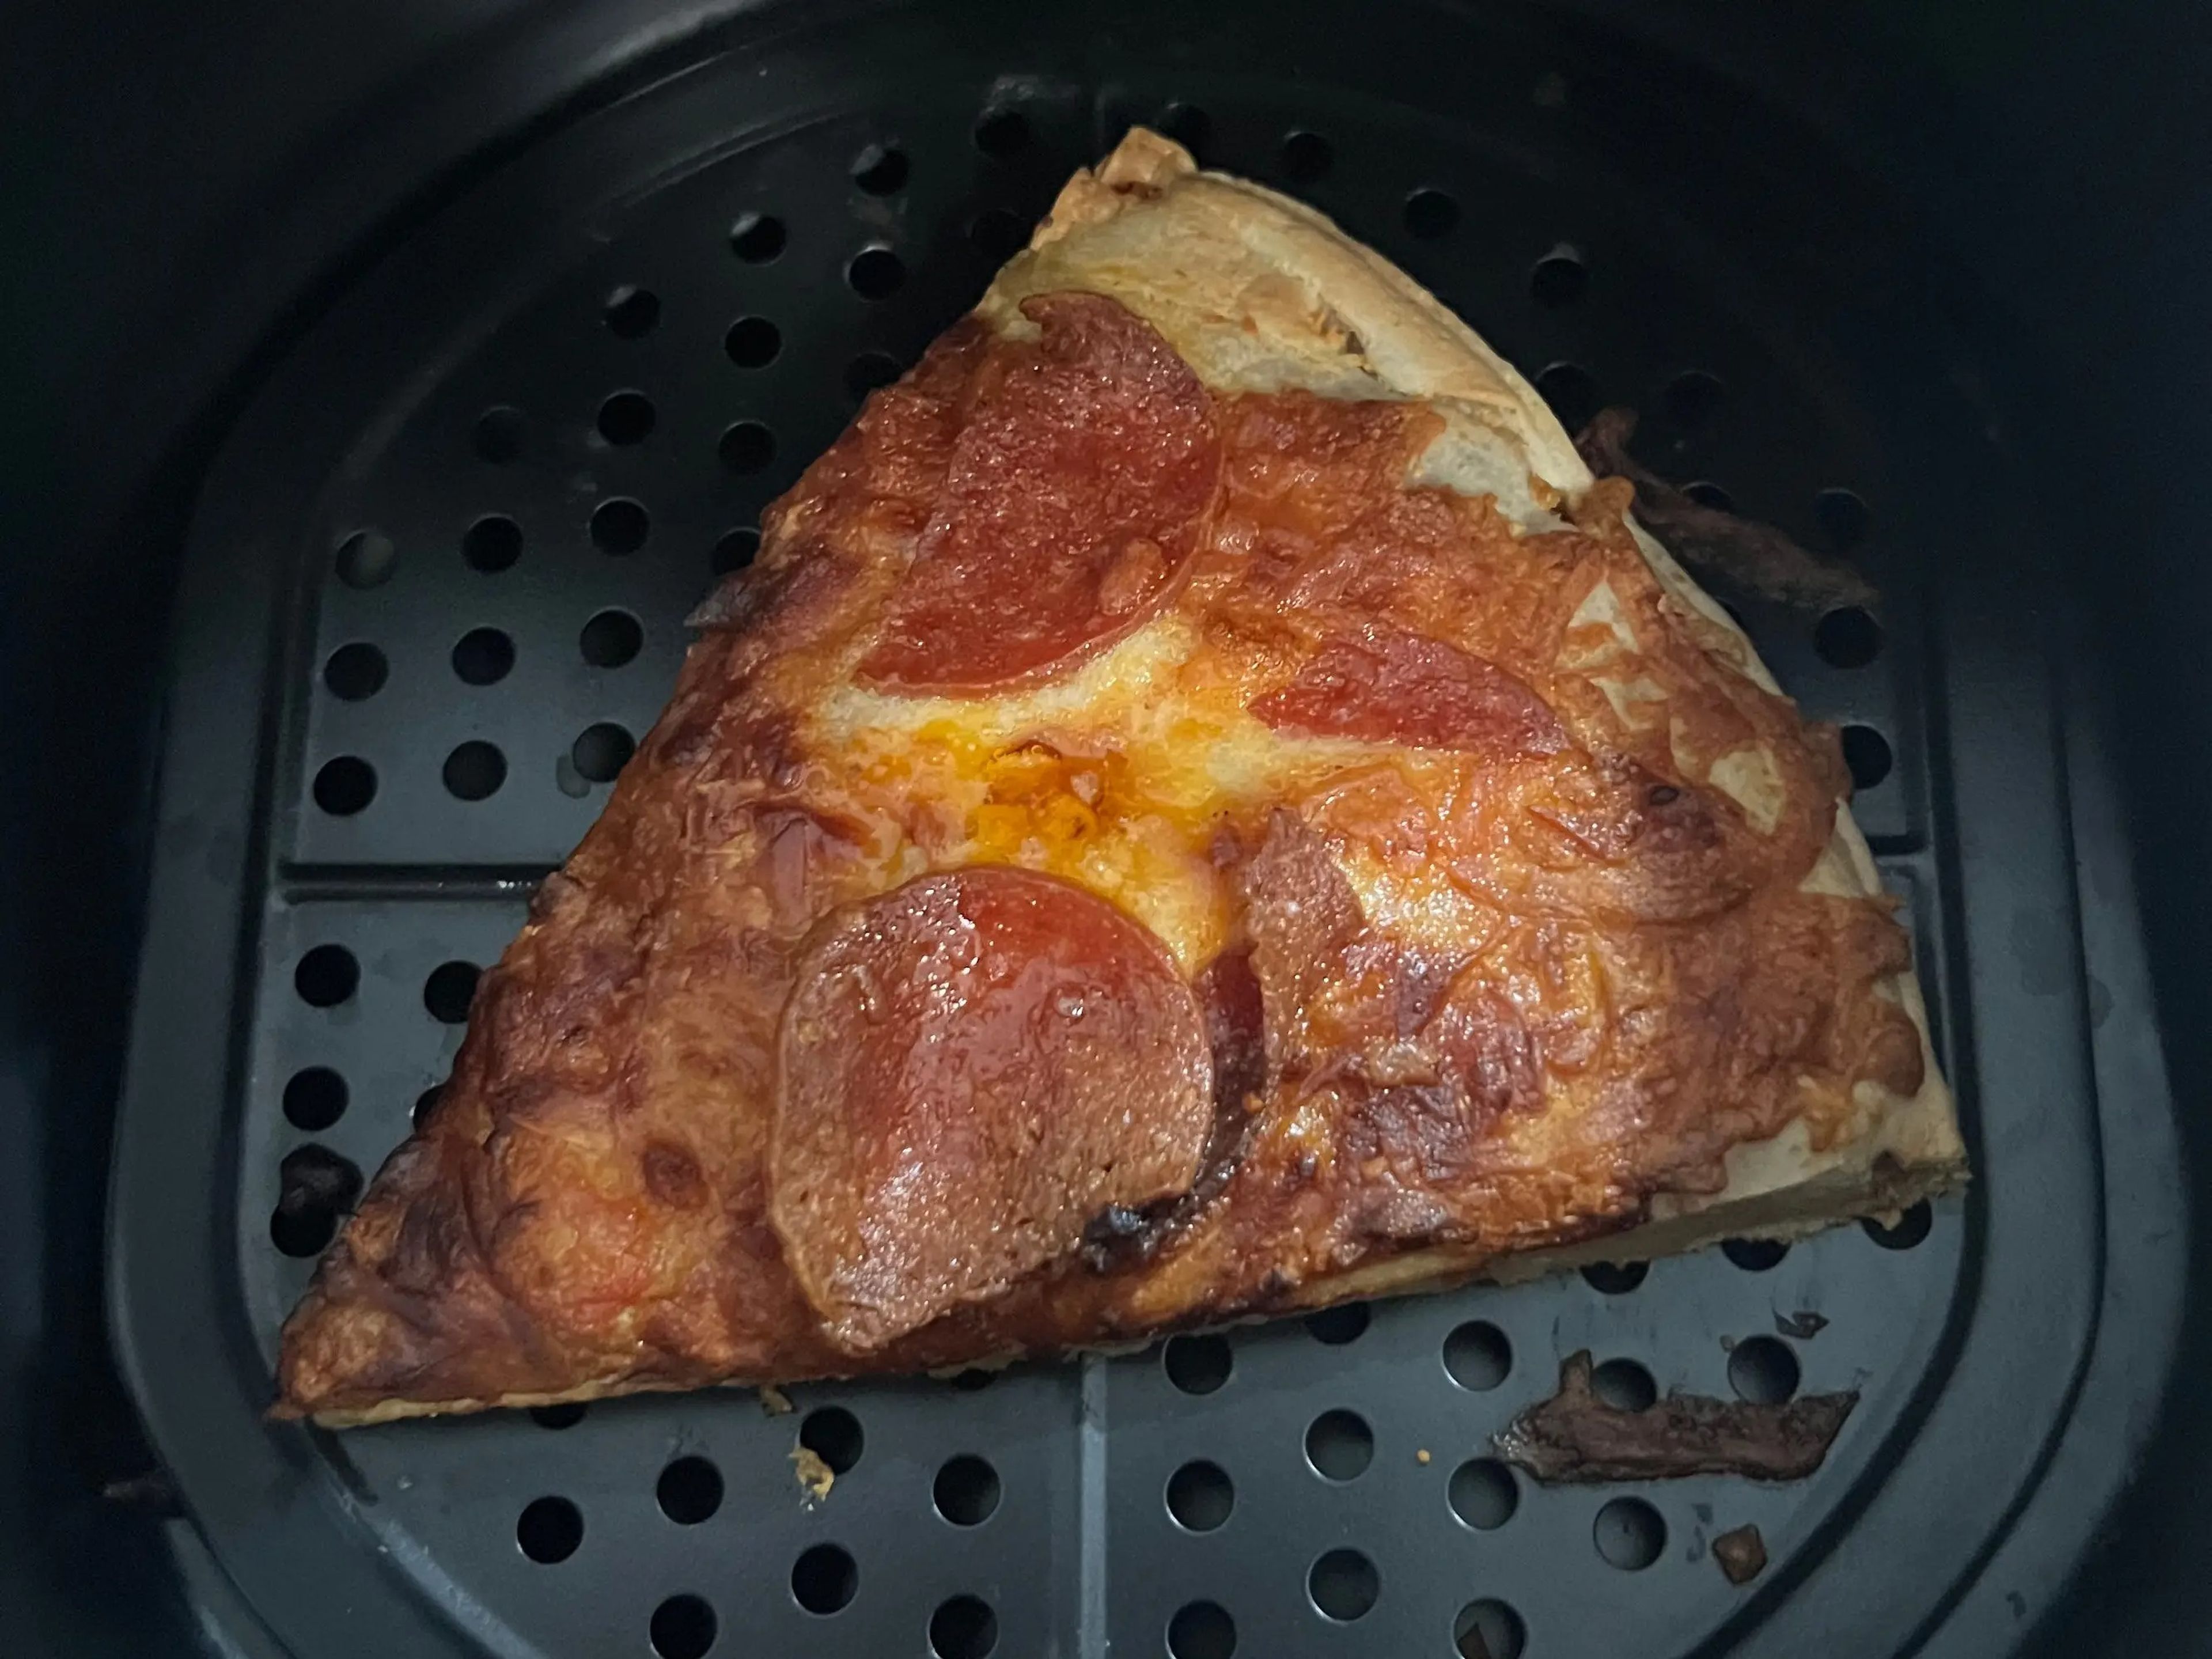 La pizza terminó quedando demasiado crujiente por fuera y poco cocida en el centro.